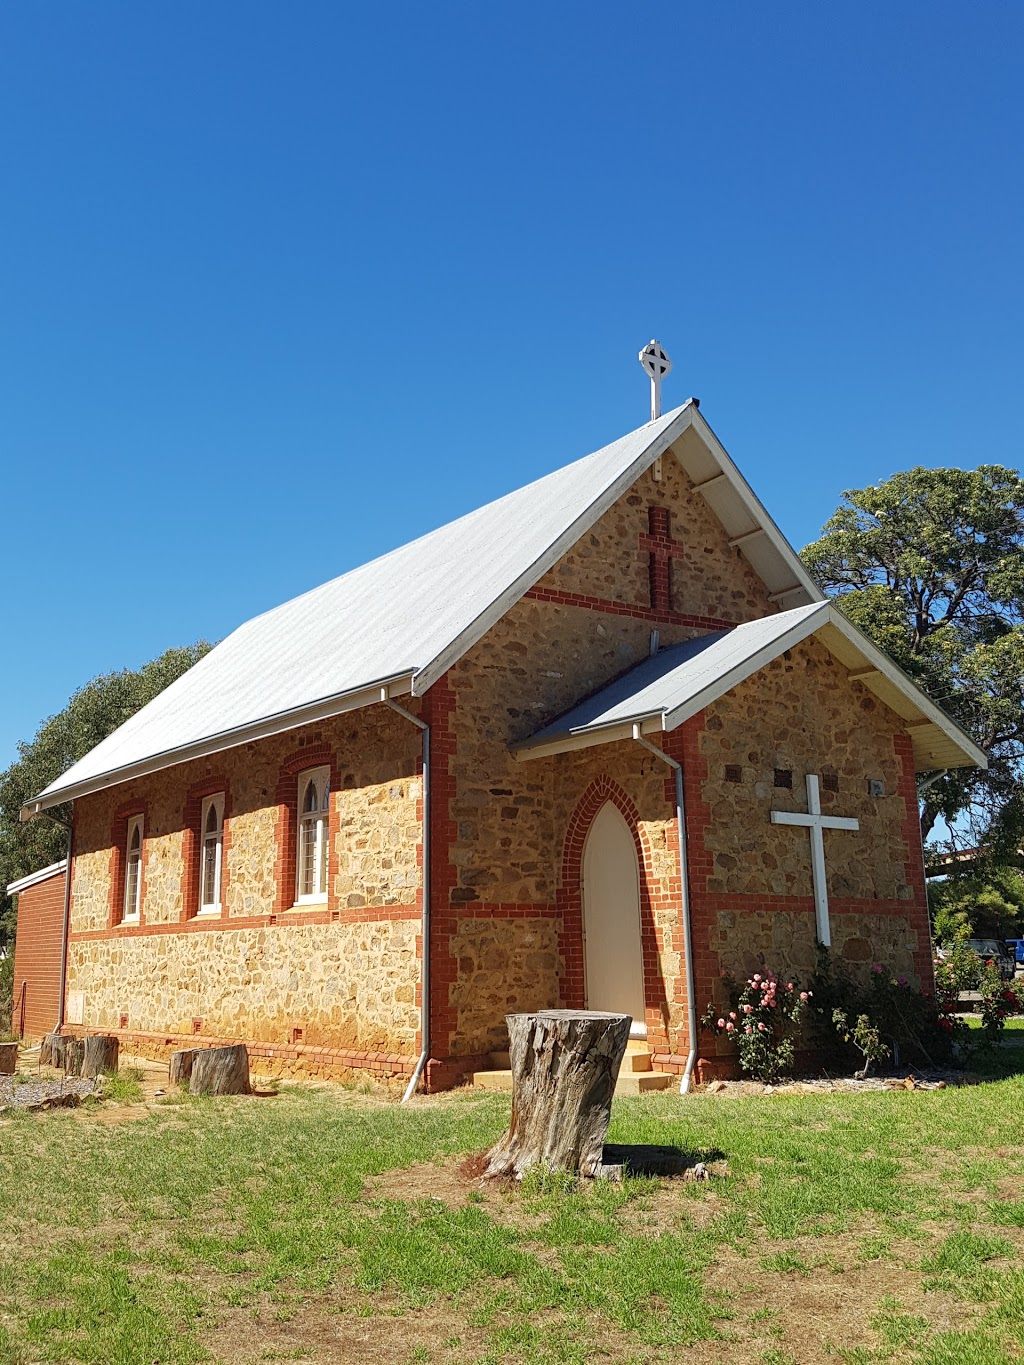 St Stephens Church | church | 5 Falls Rd, Serpentine WA 6125, Australia | 0895250247 OR +61 8 9525 0247